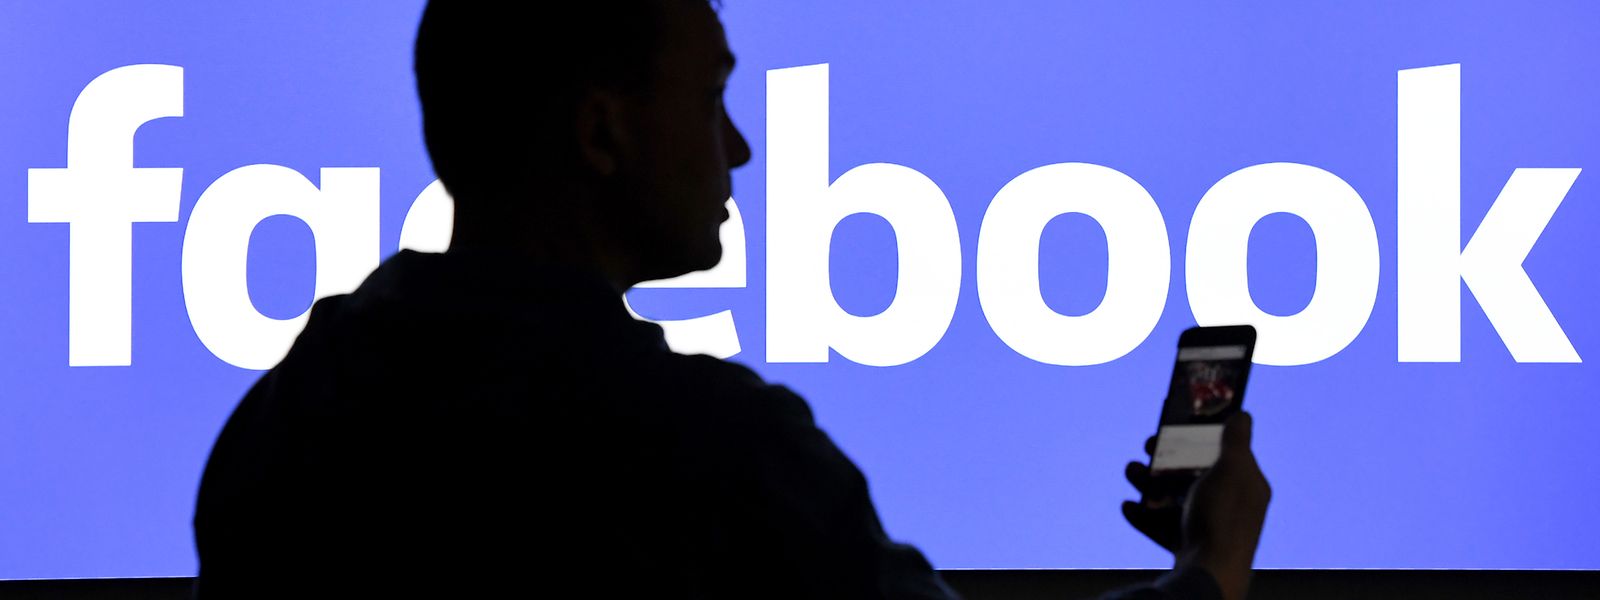 Facebook gewinnt in der Corona-Krise beschleunigt neue Nutzer - und das Werbegeschäft des weltgrößten Online-Netzwerks hat sich nach einem Rückschlag im März bereits wieder stabilisiert.